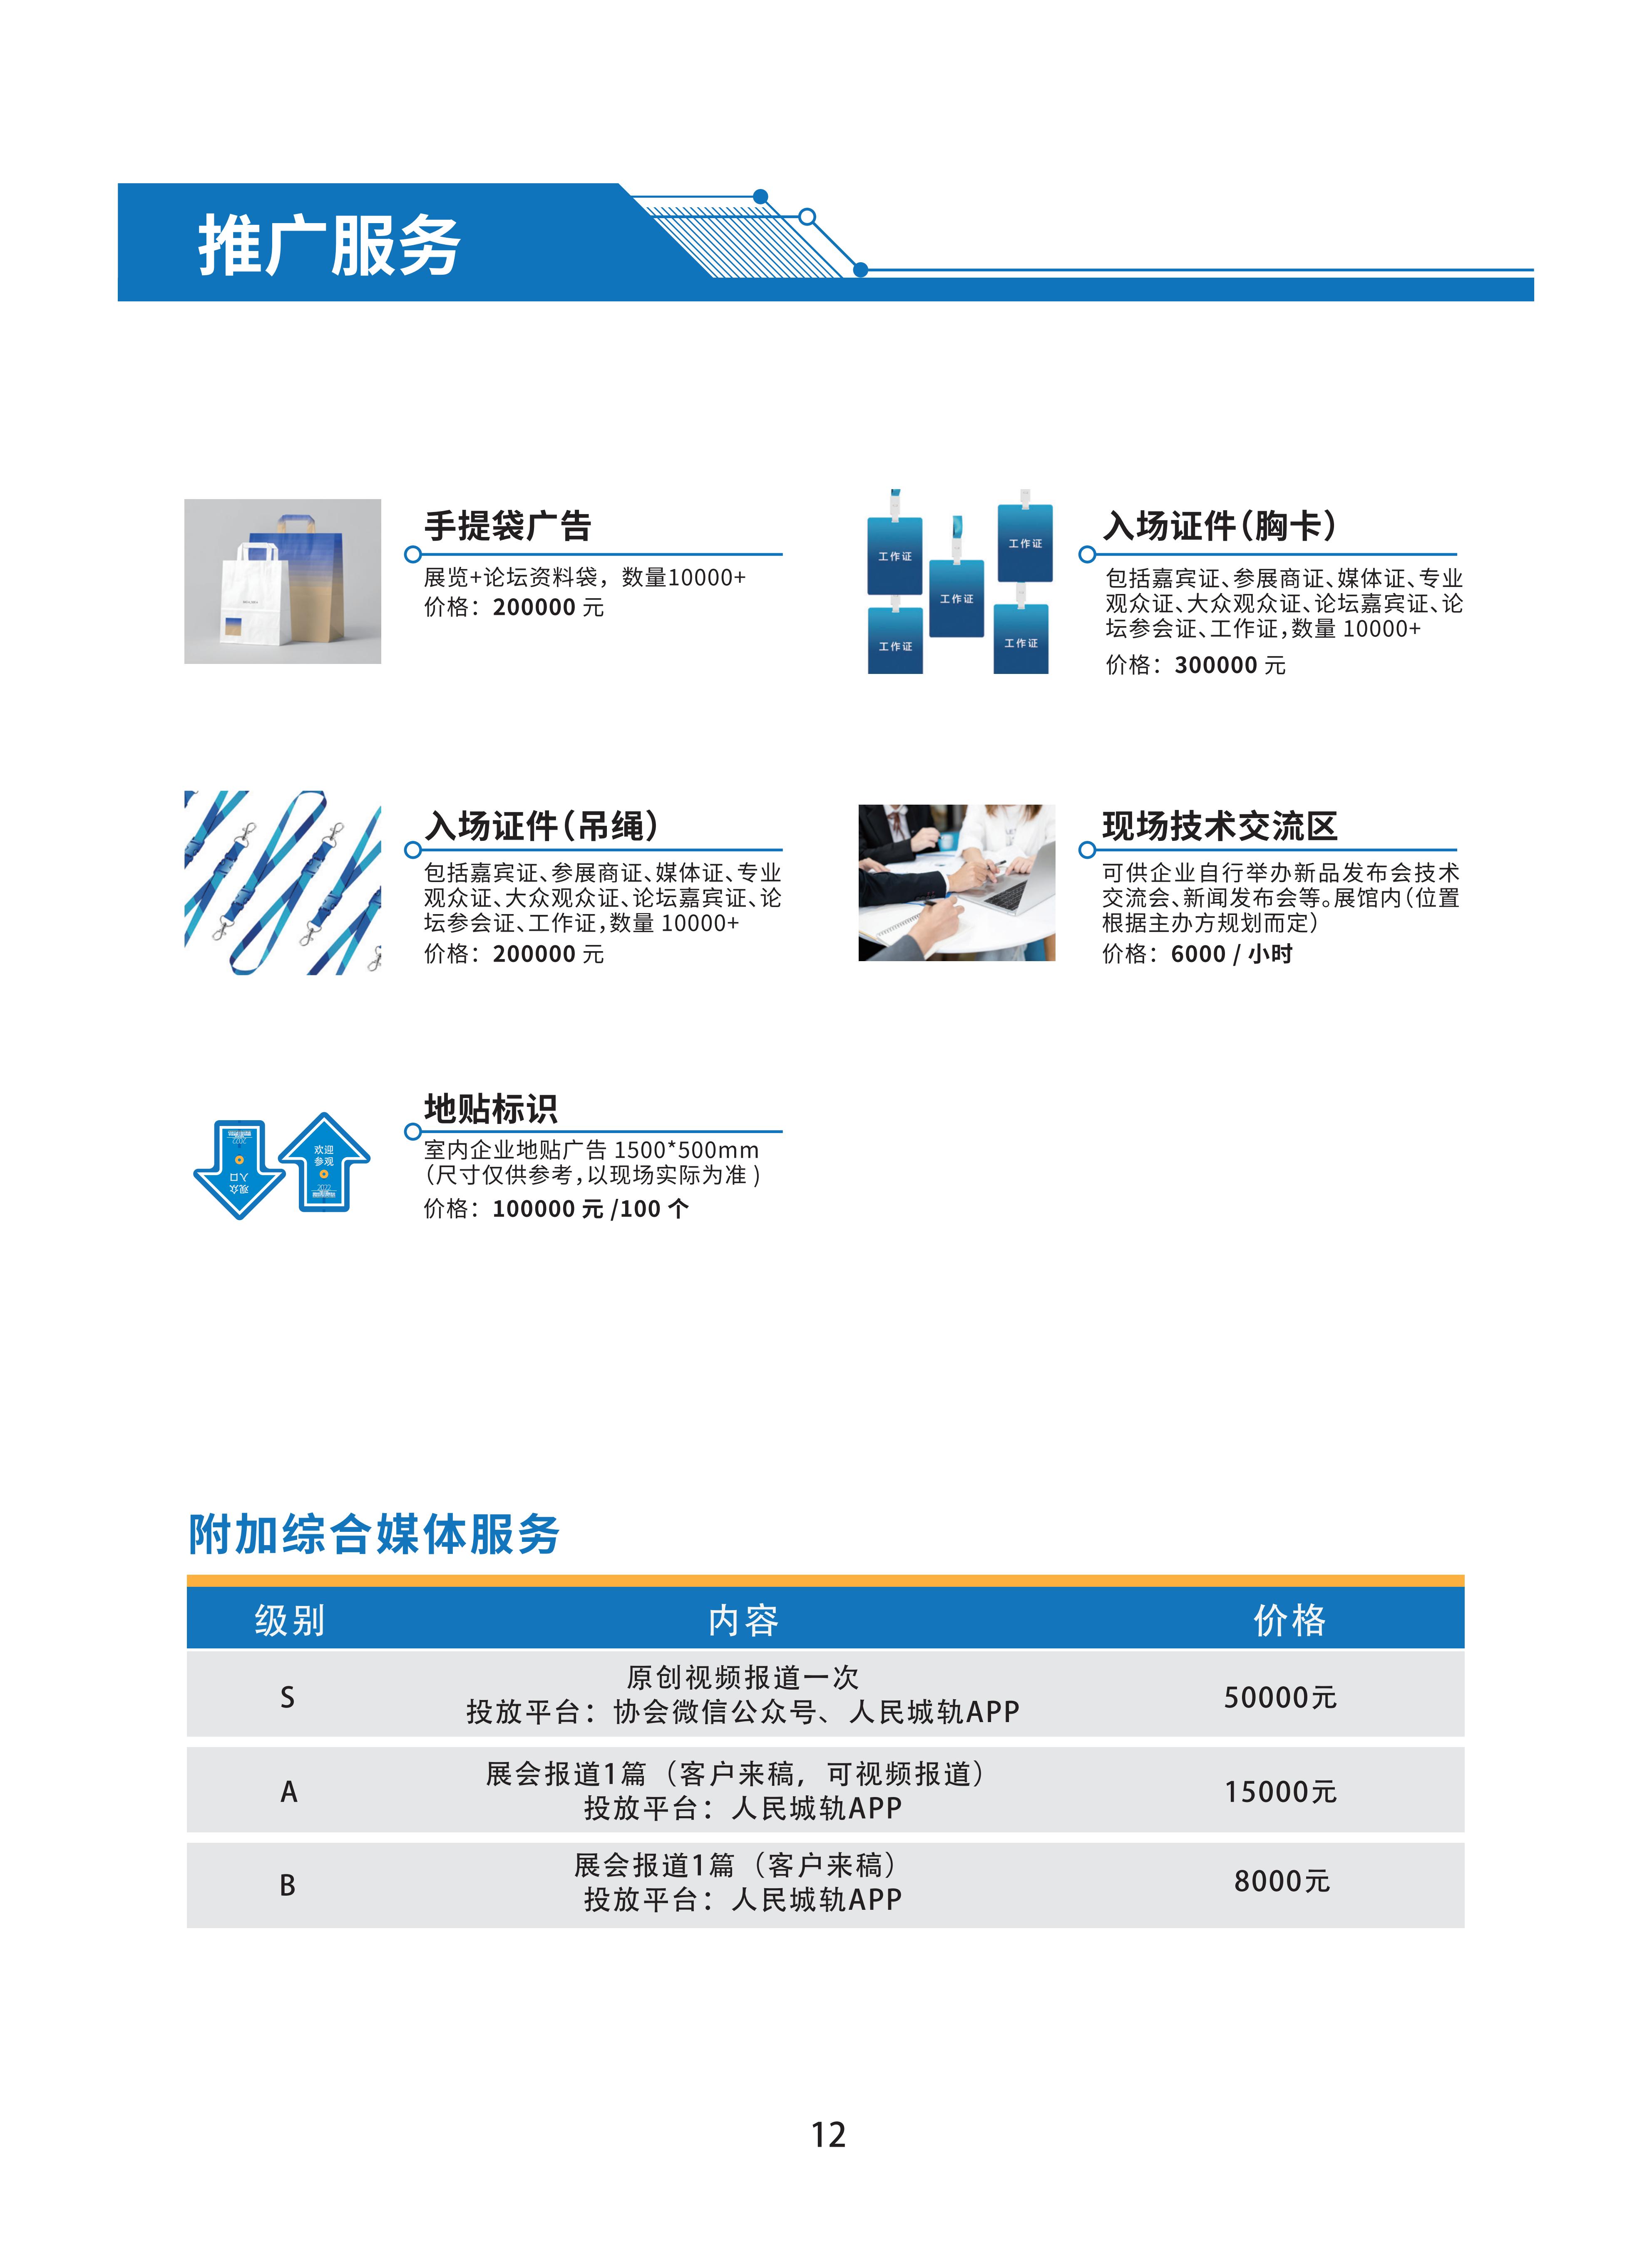 首届广州国际轨道交通展招商手册-20230306_14.jpg